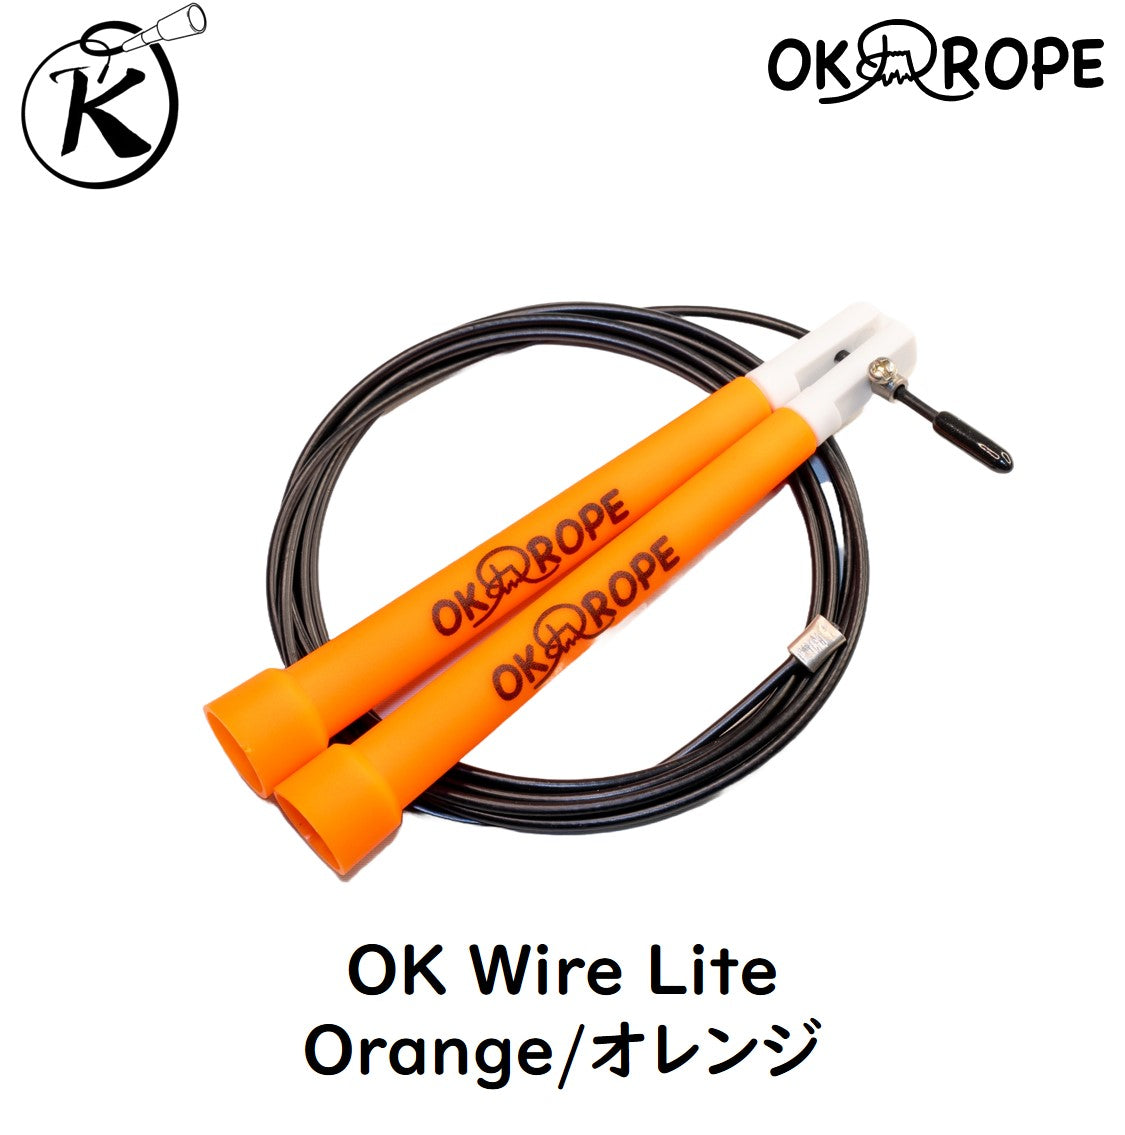 [初中上級者向] OK Wire Lite スピードワイヤーロープ (初めてのワイヤーロープに最適)